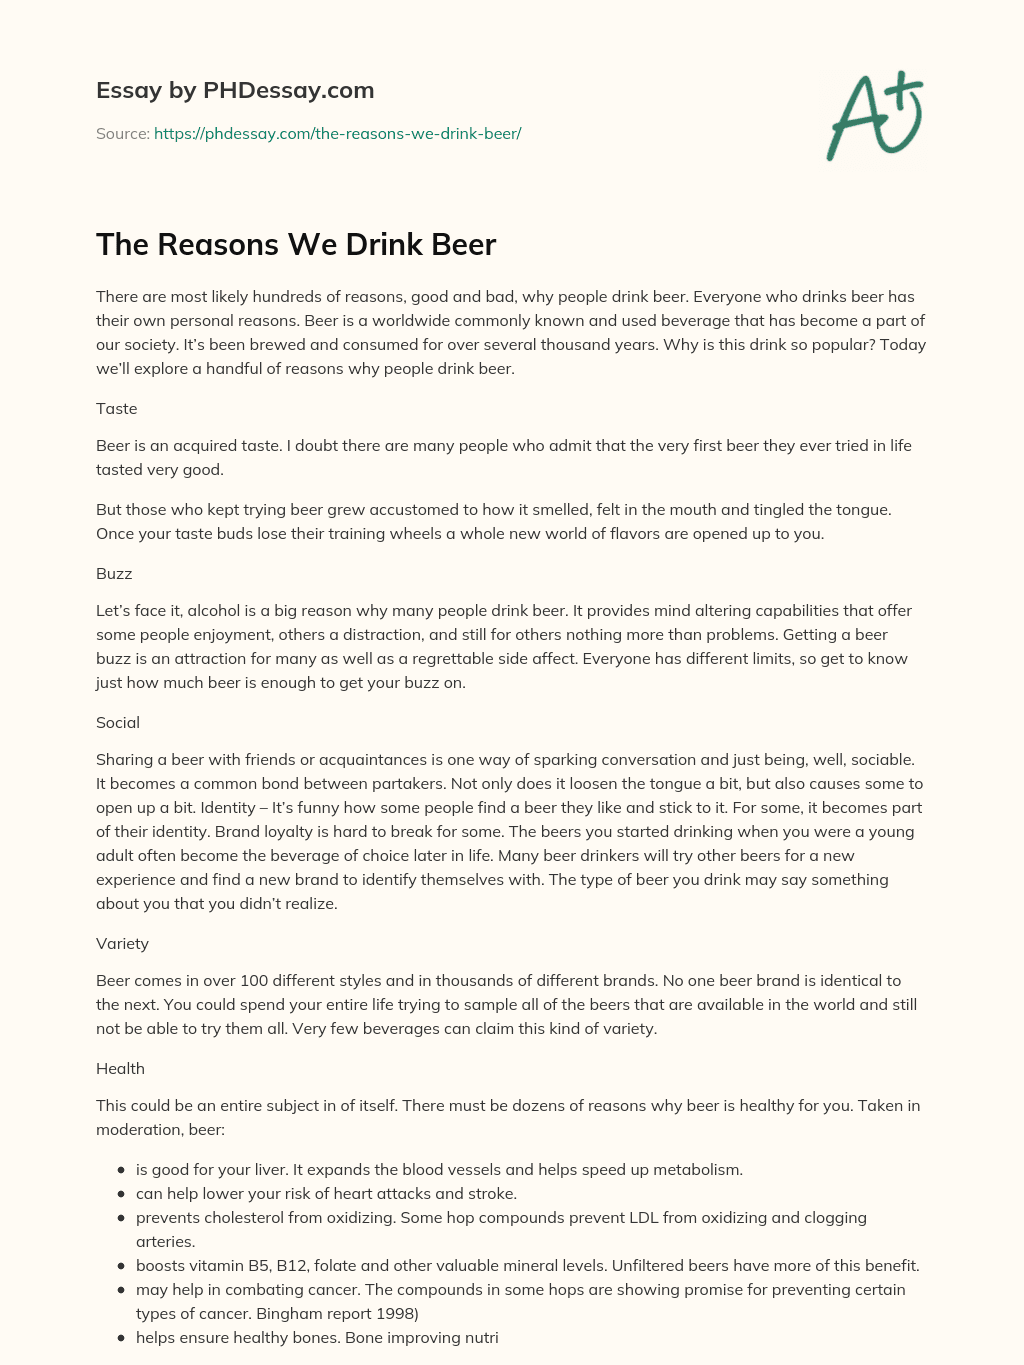 The Reasons We Drink Beer essay